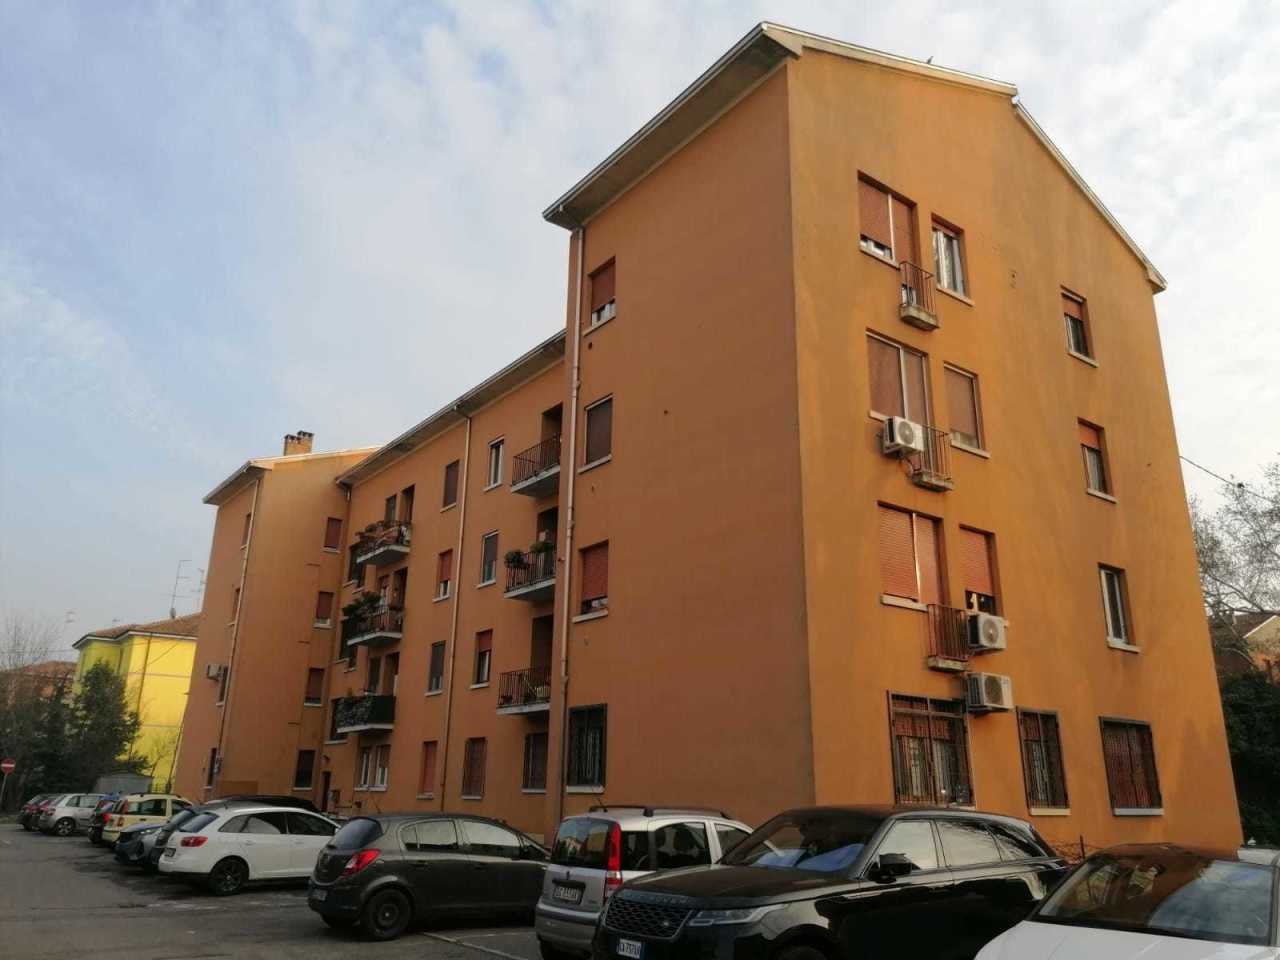 Appartamento in vendita a Parma, 2 locali, prezzo € 95.000 | PortaleAgenzieImmobiliari.it